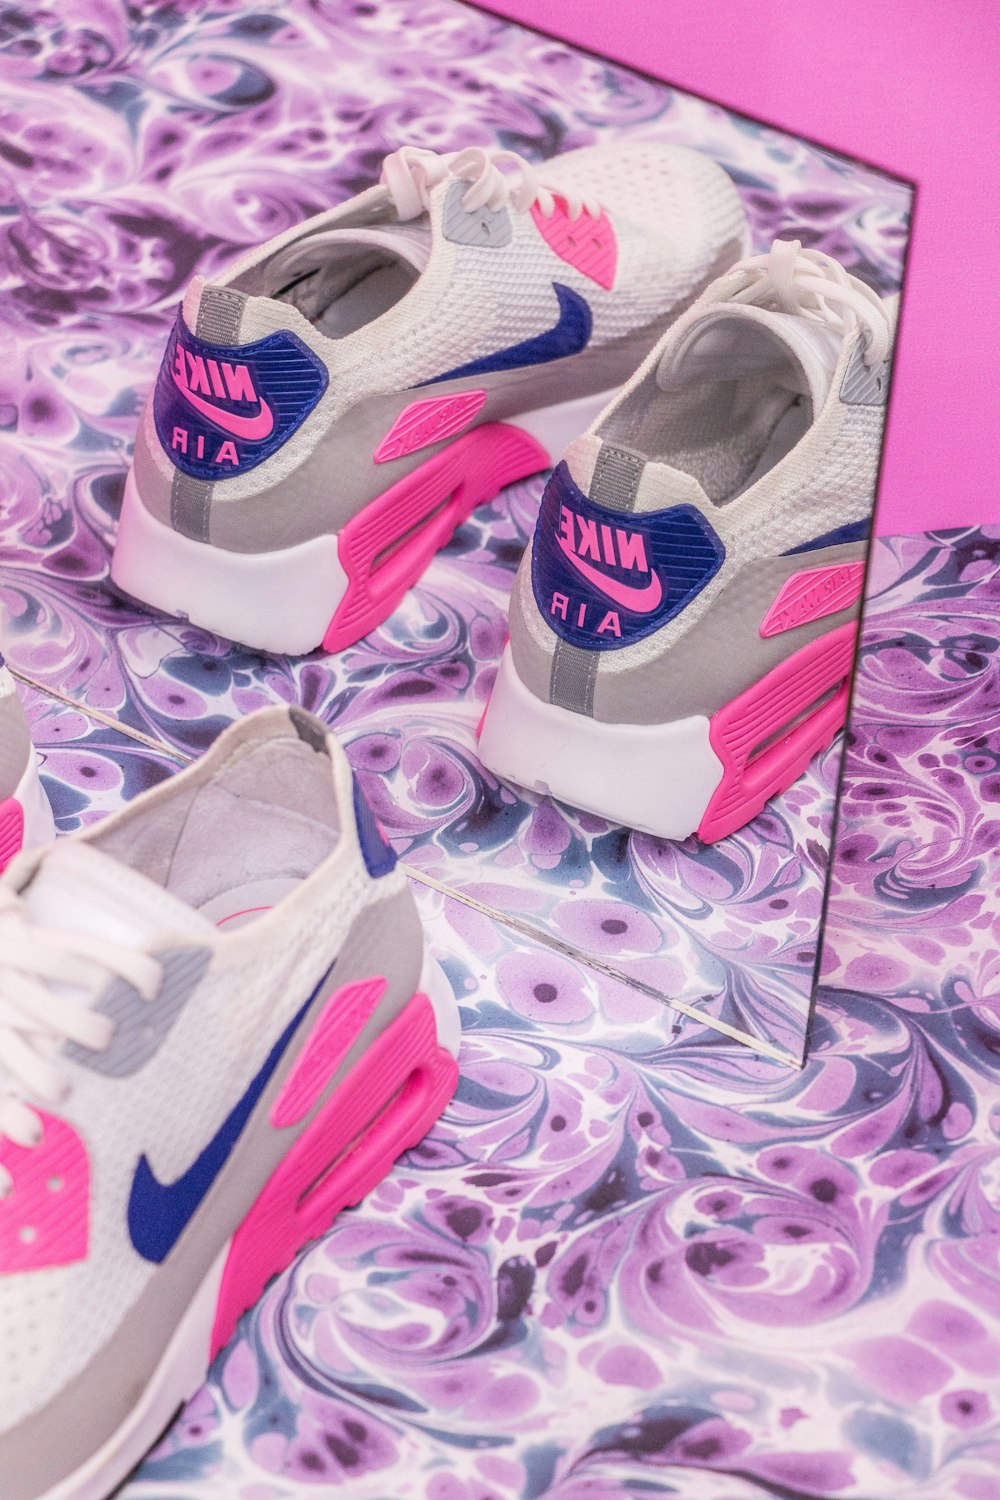 foto ravvicinata paio di scarpe da ginnastica Nike Air Max bianche-grigie e rosa davanti allo specchio